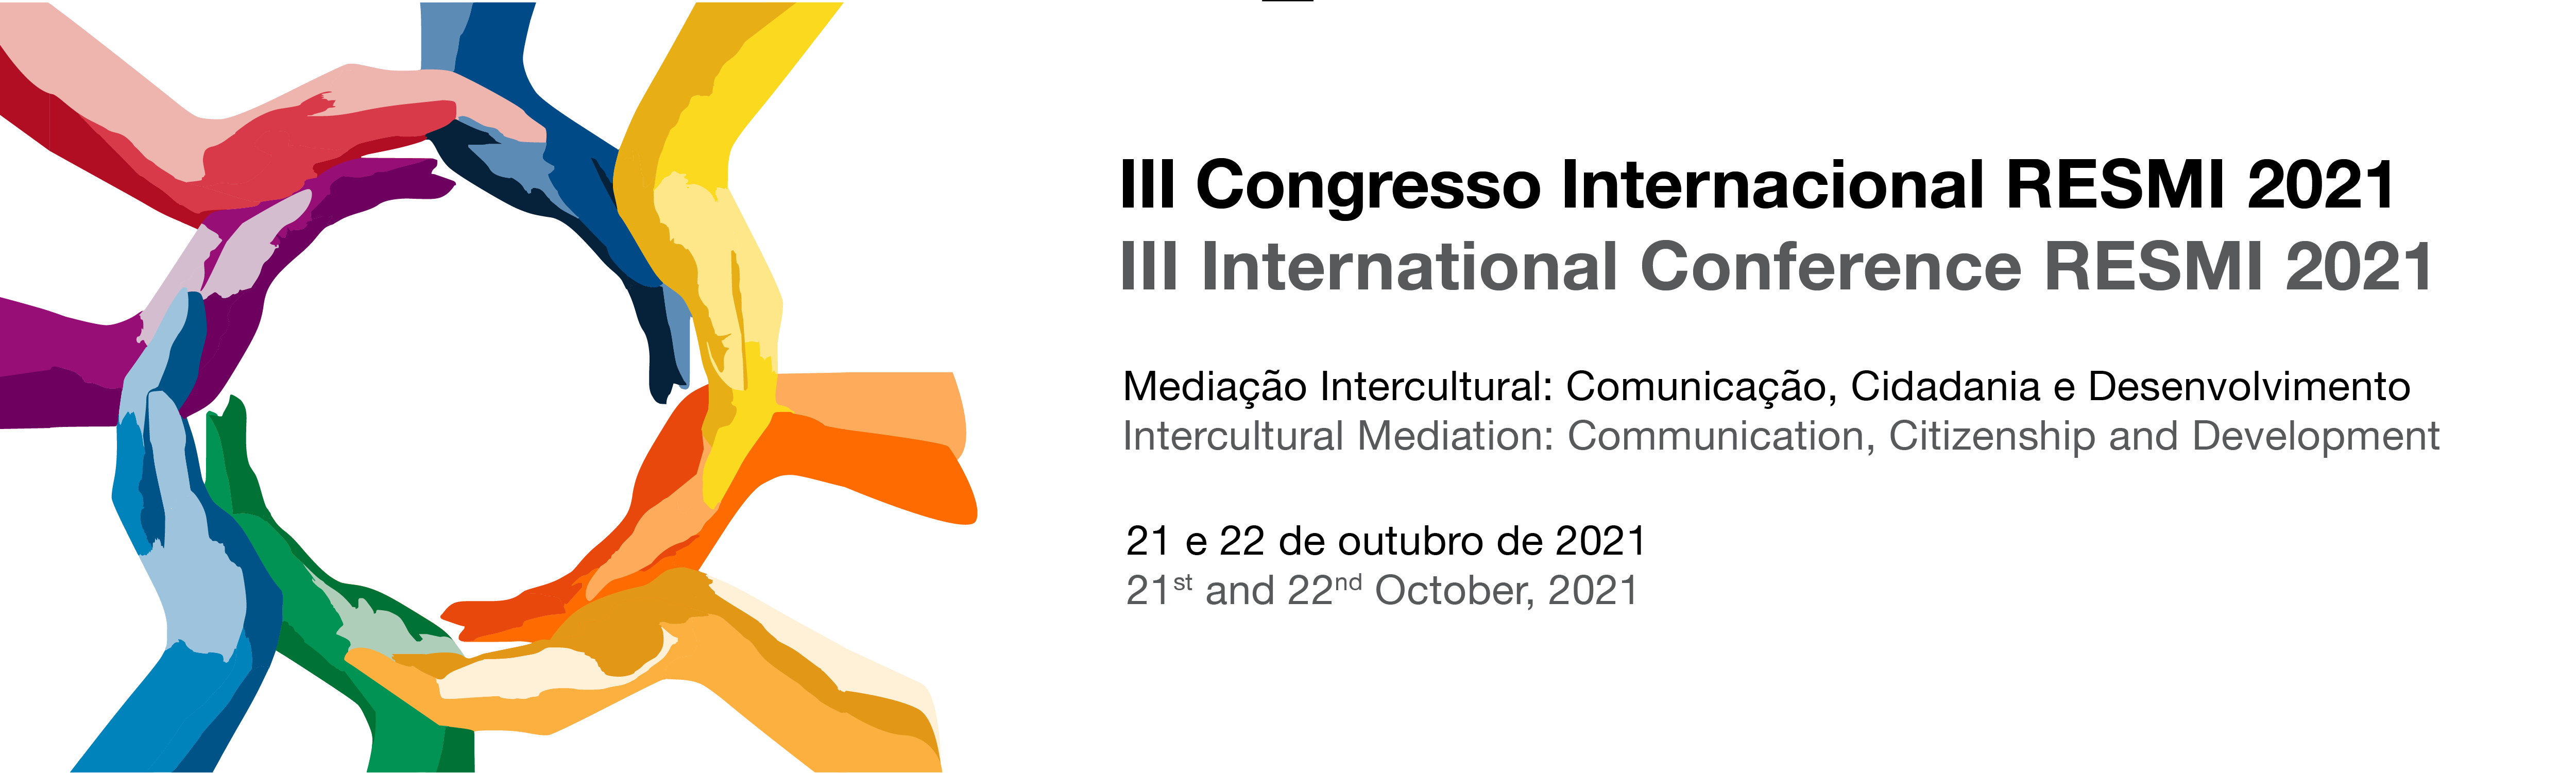 III Congresso Internacional RESMI 2021